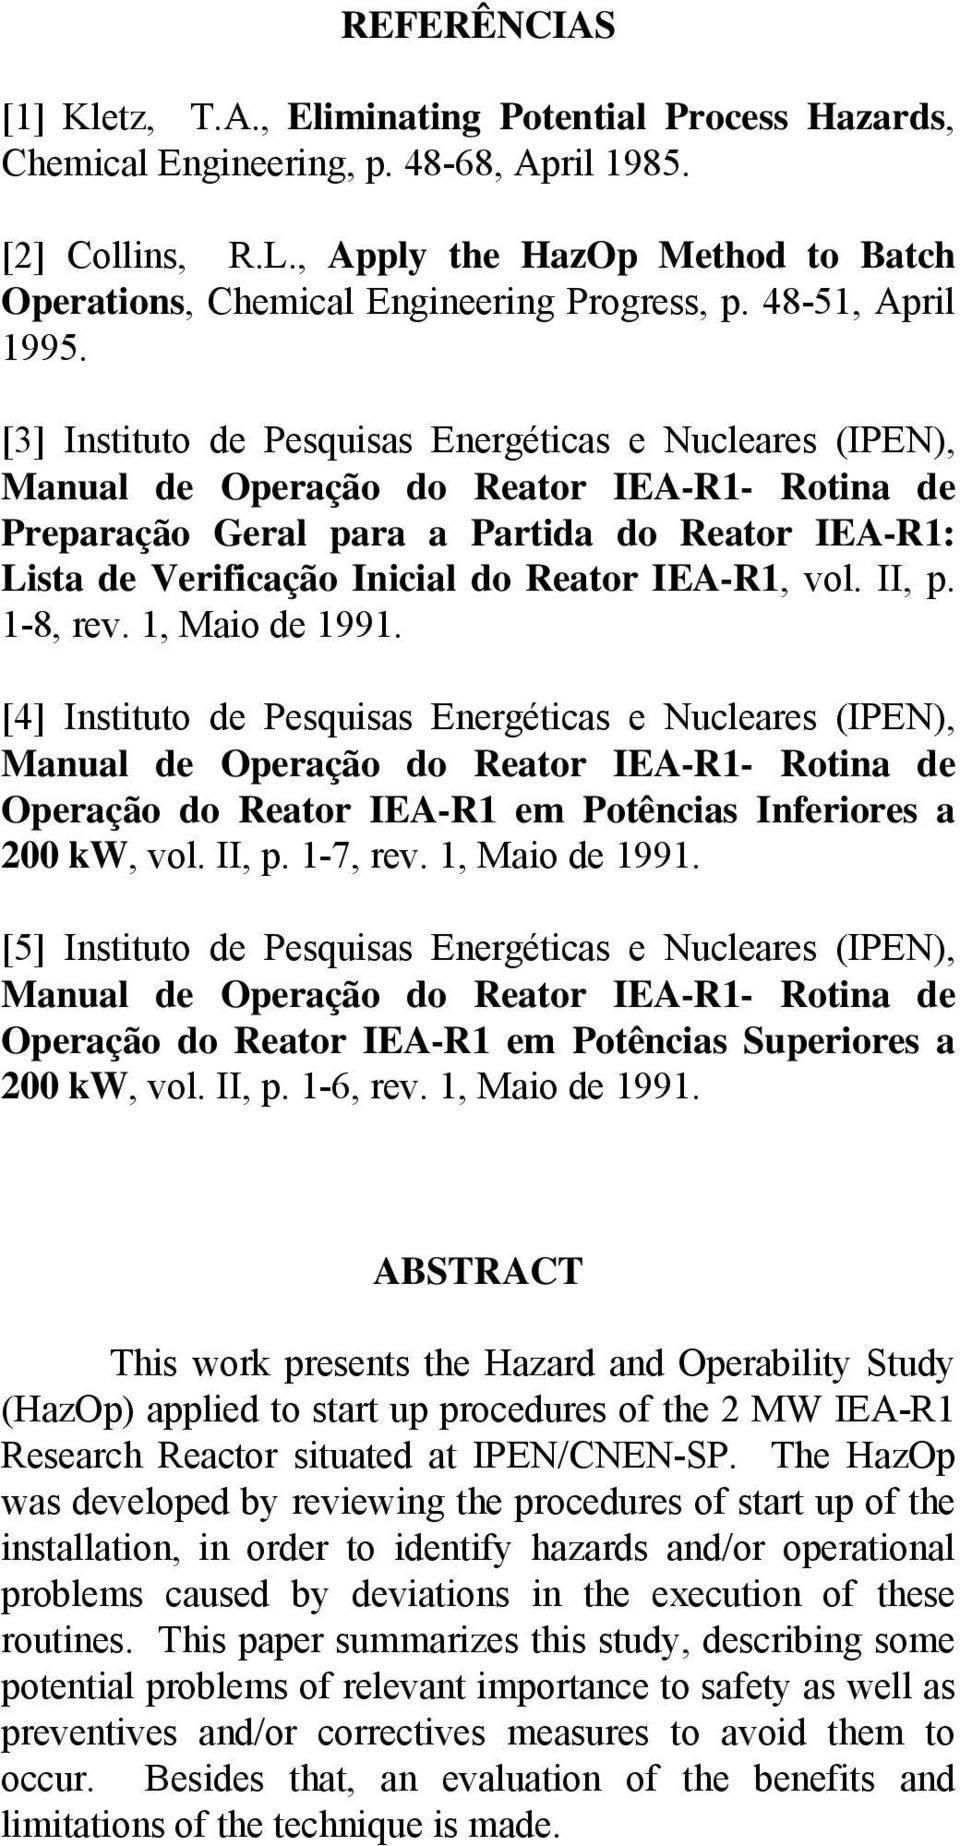 [3] Instituto de Pesquisas Energéticas e Nucleares (IPEN), Preparação Geral para a Partida do Reator IEA-R1: Lista de Verificação Inicial do Reator IEA-R1, vol. II, p. 1-8, rev. 1, Maio de 1991.